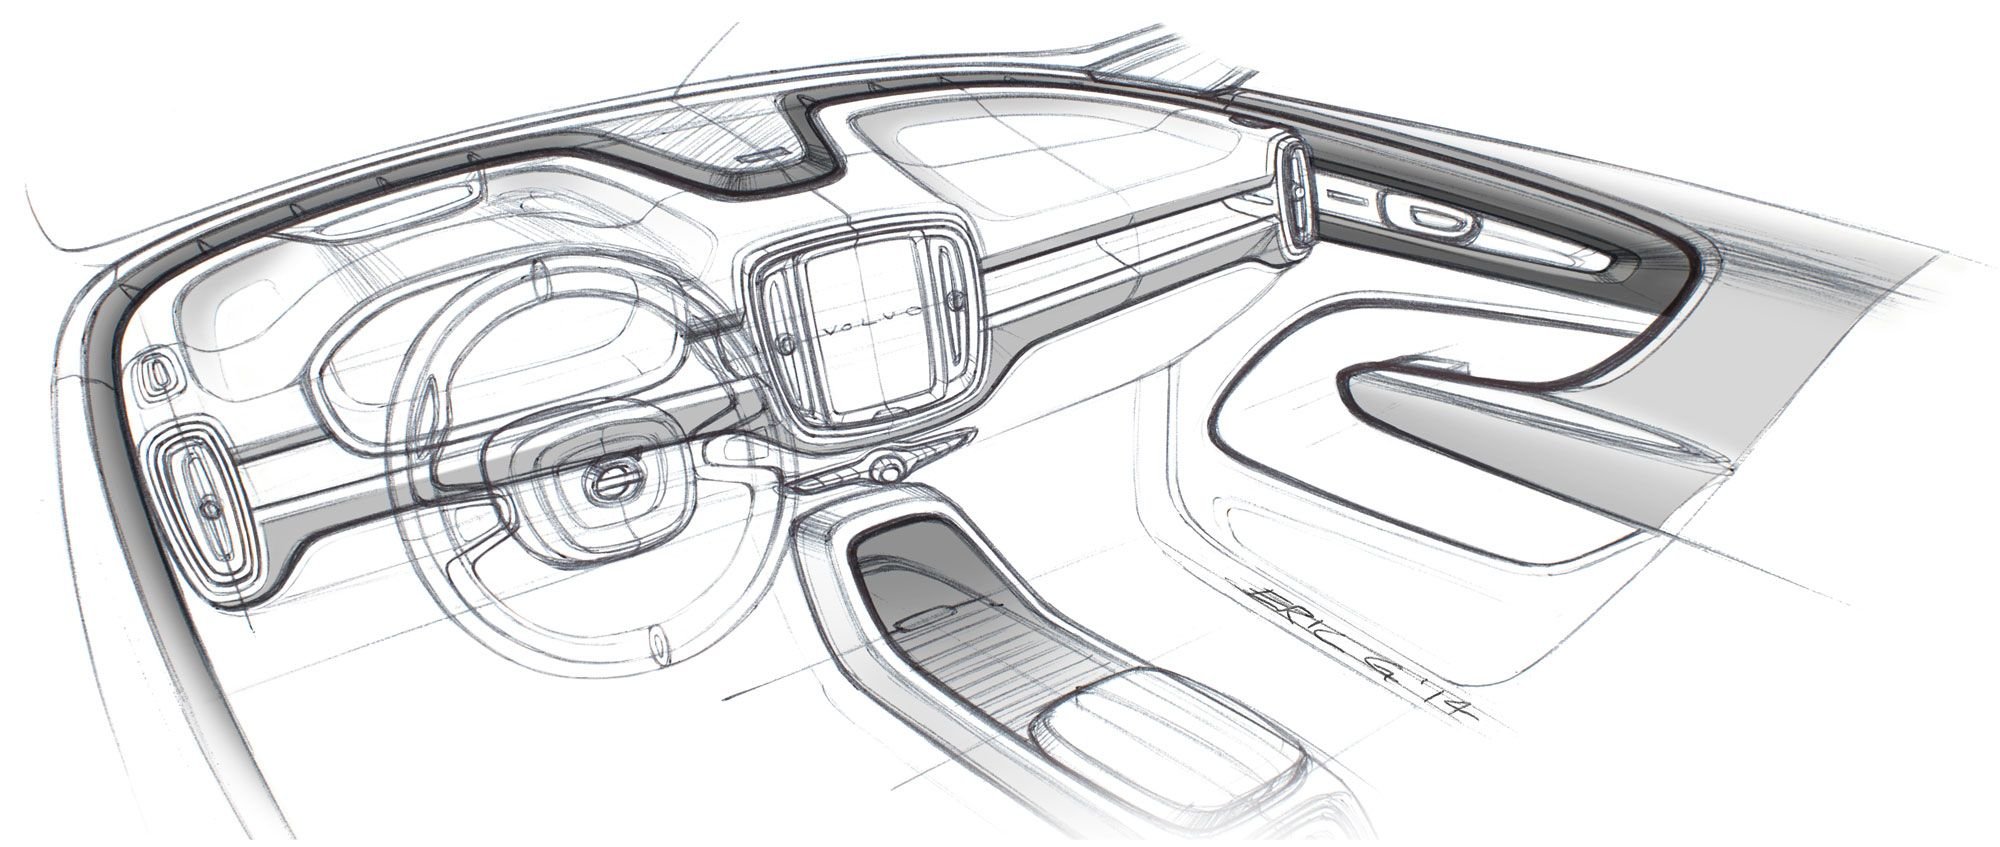 Automotive da zona sul 4. Volvo 2023 Concept Interior. Проектирование автомобиля. Скетч интерьера авто. Скетчи салона автомобилей.